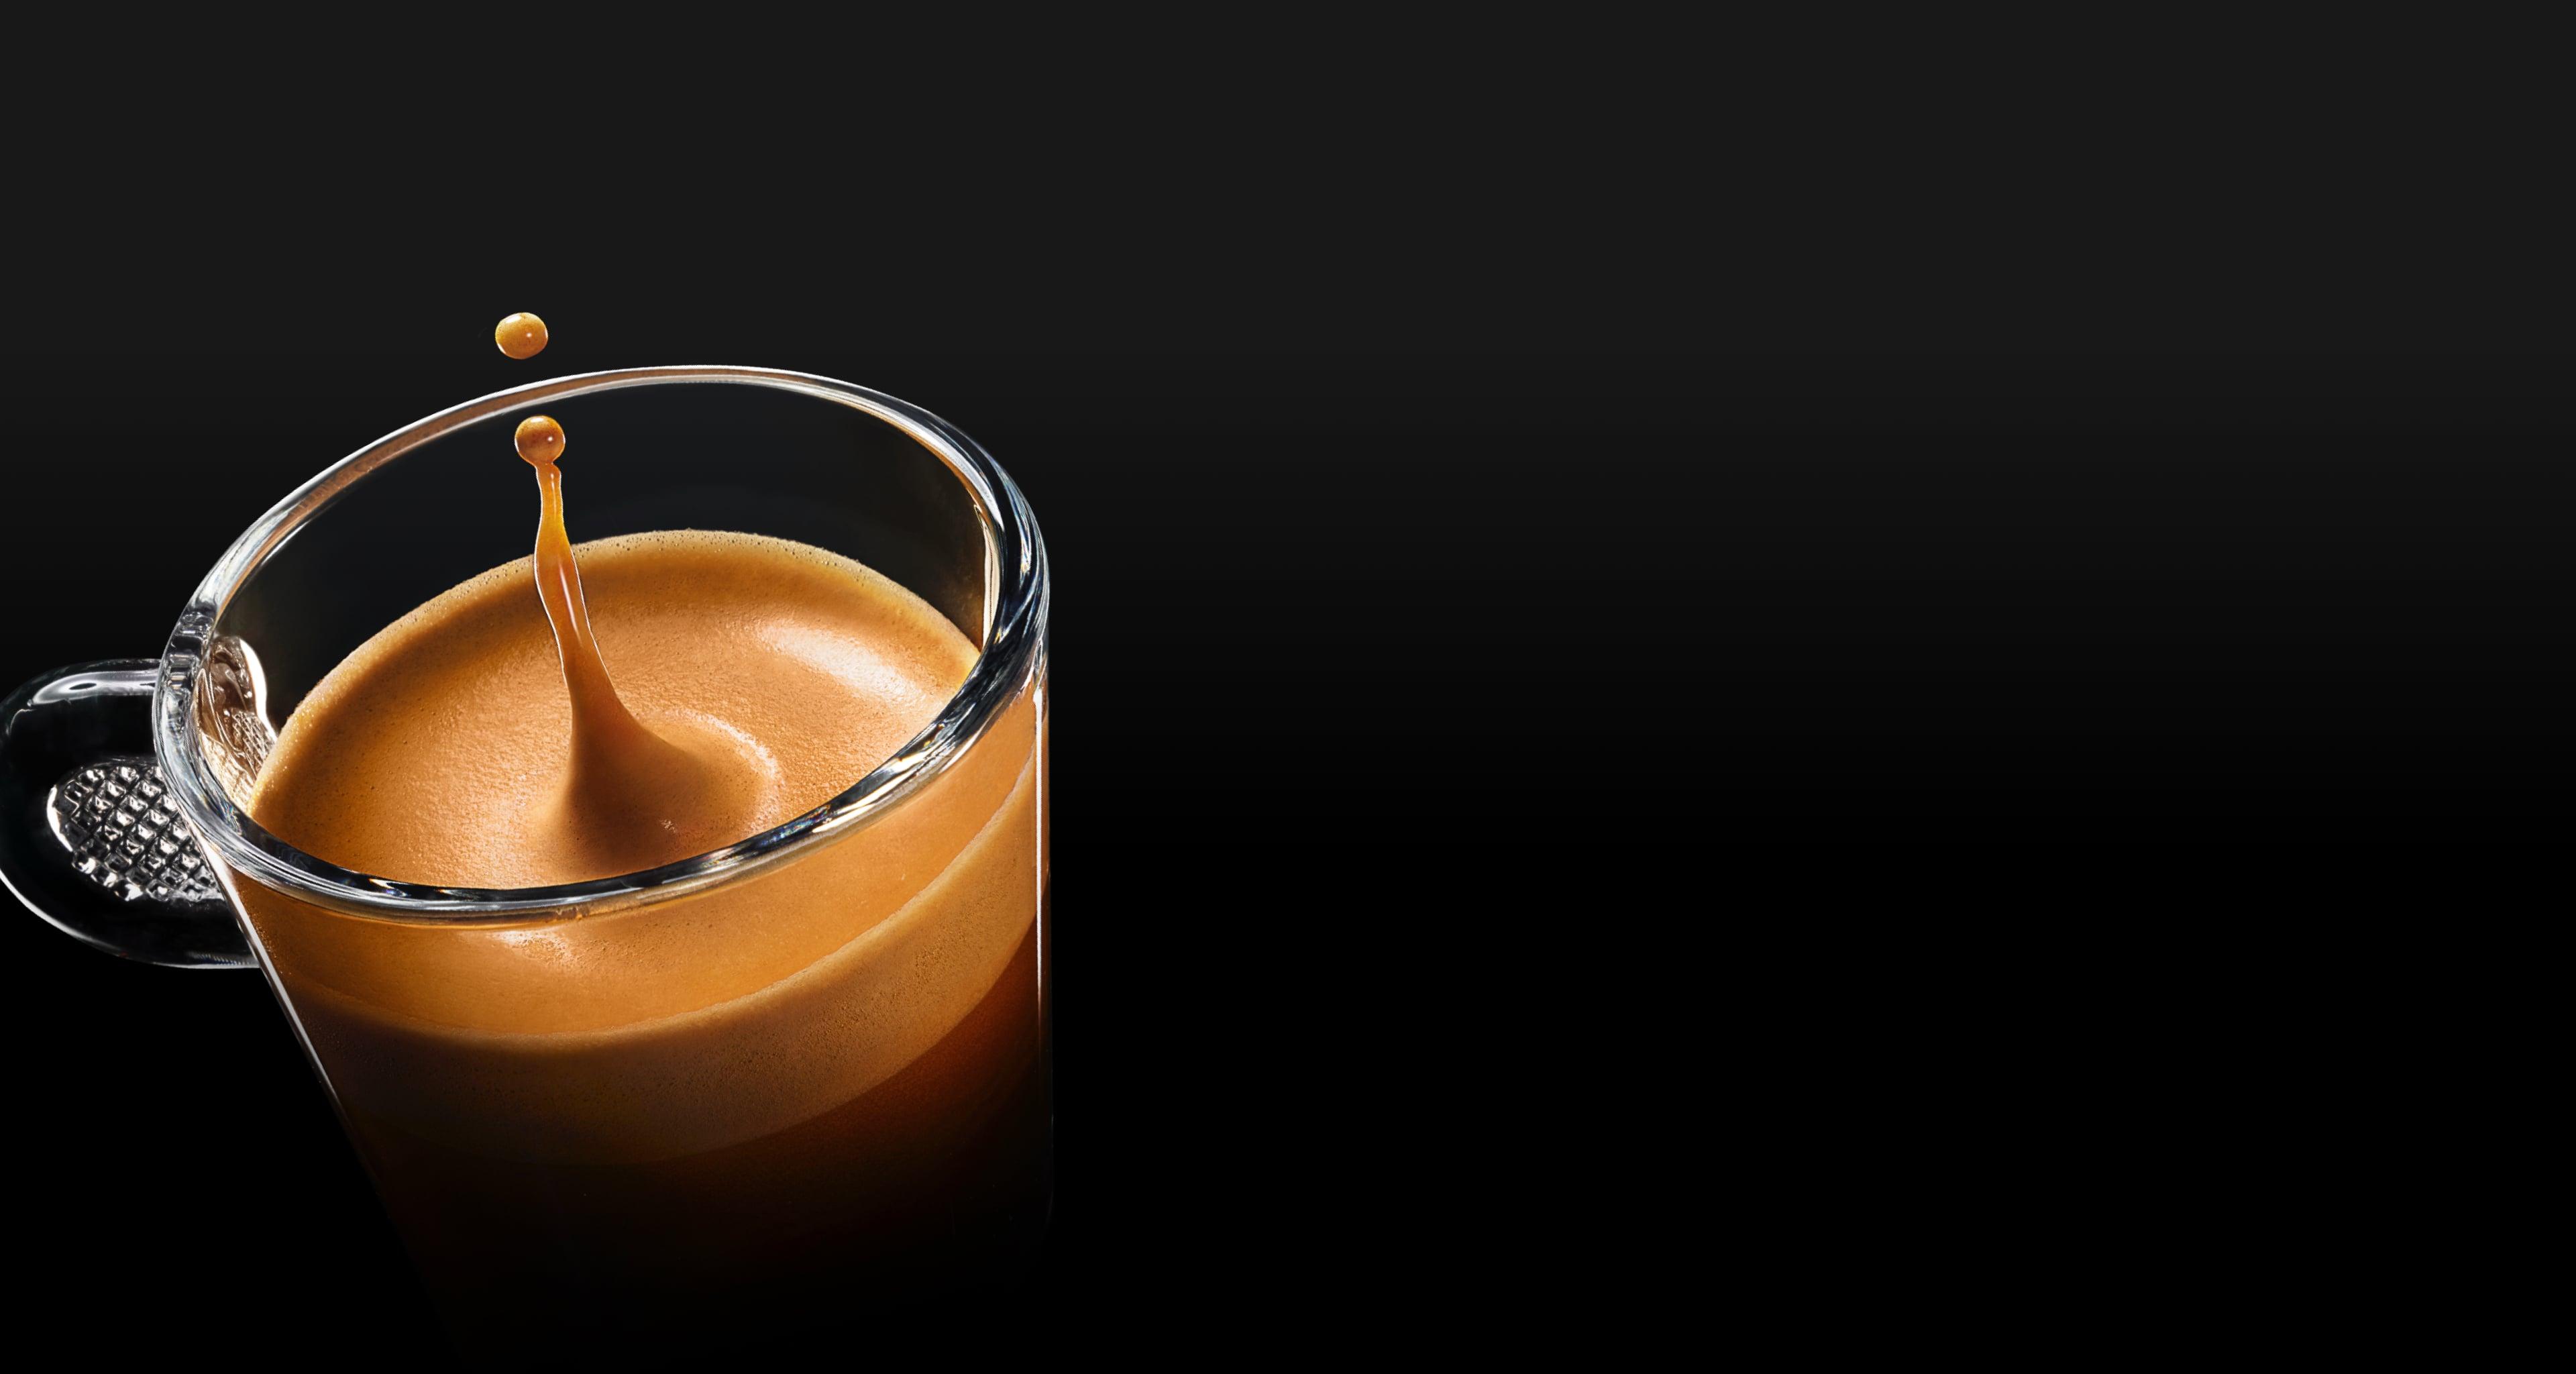 When it comes to taste, crema Nestlé Nespresso